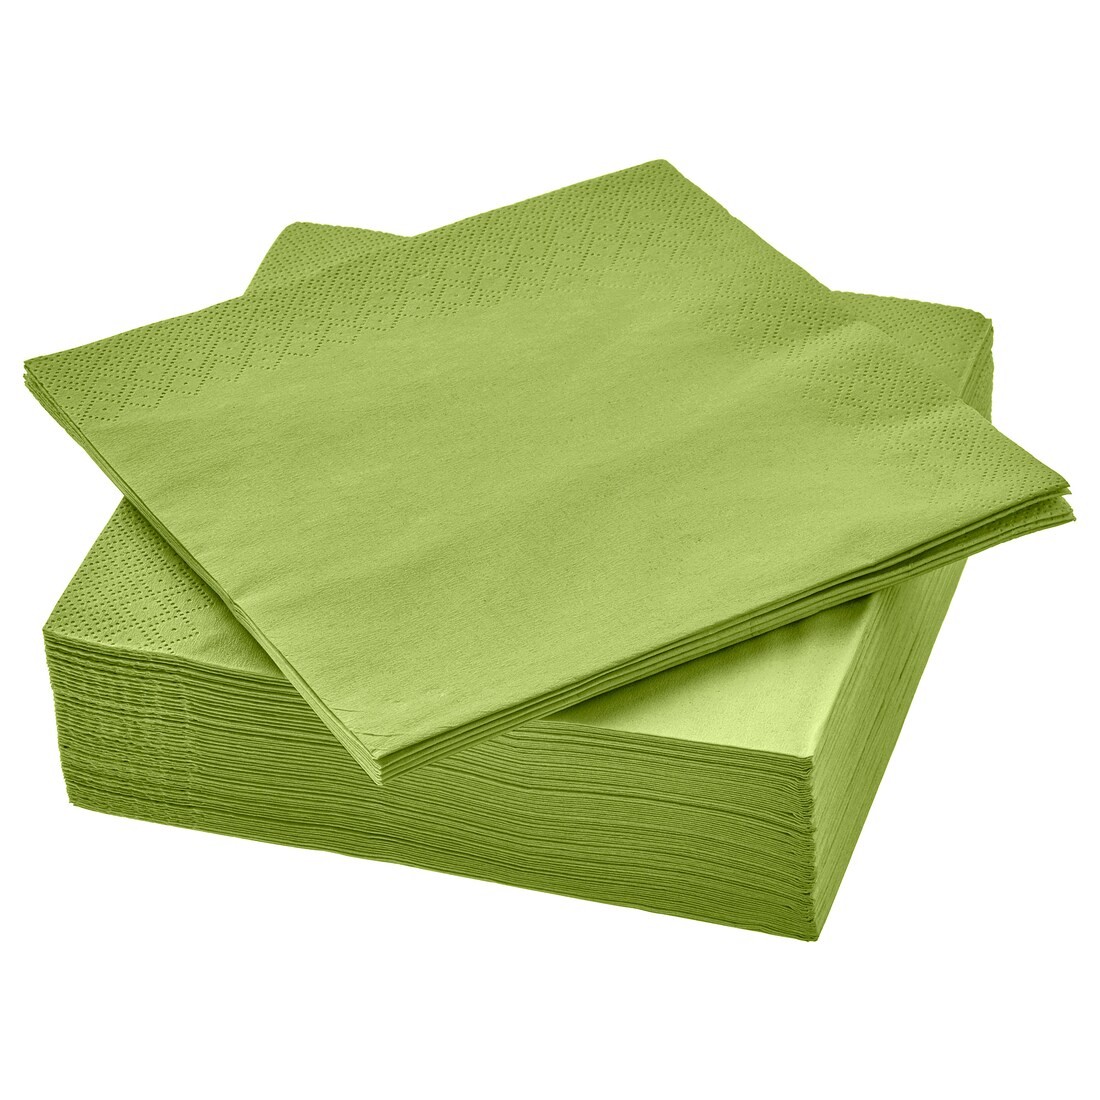 IKEA FANTASTISK ФАНТАСТИСК Салфетки бумажные, зеленый травянистый, 33x33 см 10398797 103.987.97